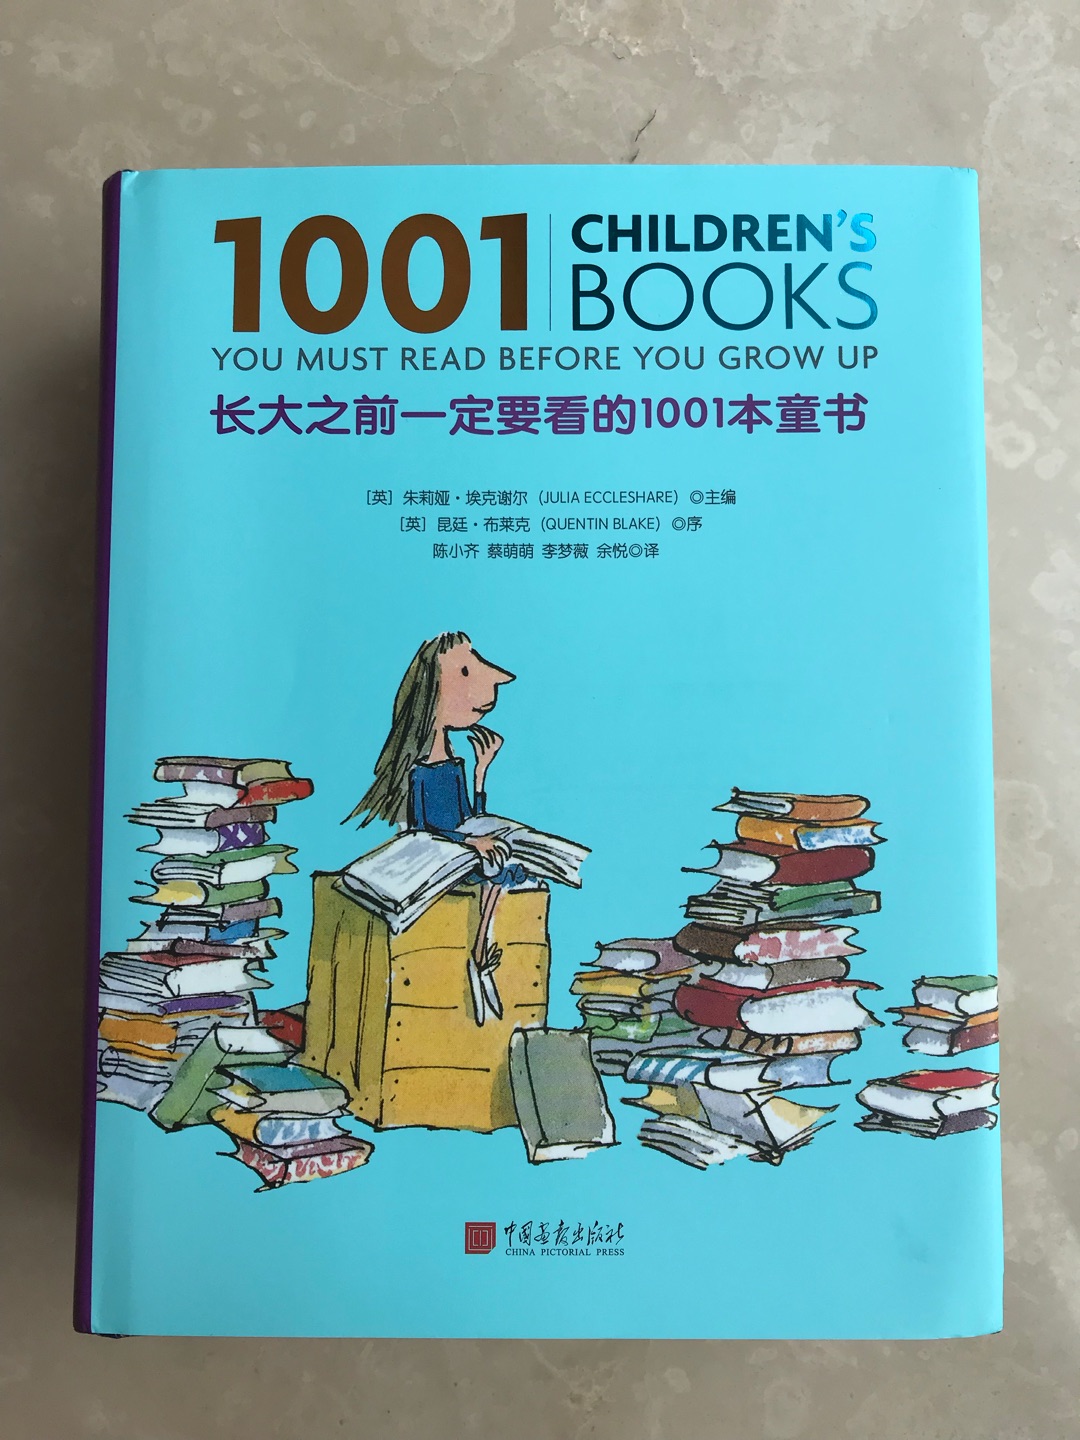 很厚一本960页。看了目录，亚洲优秀童书很少，大部分都是欧美的。。